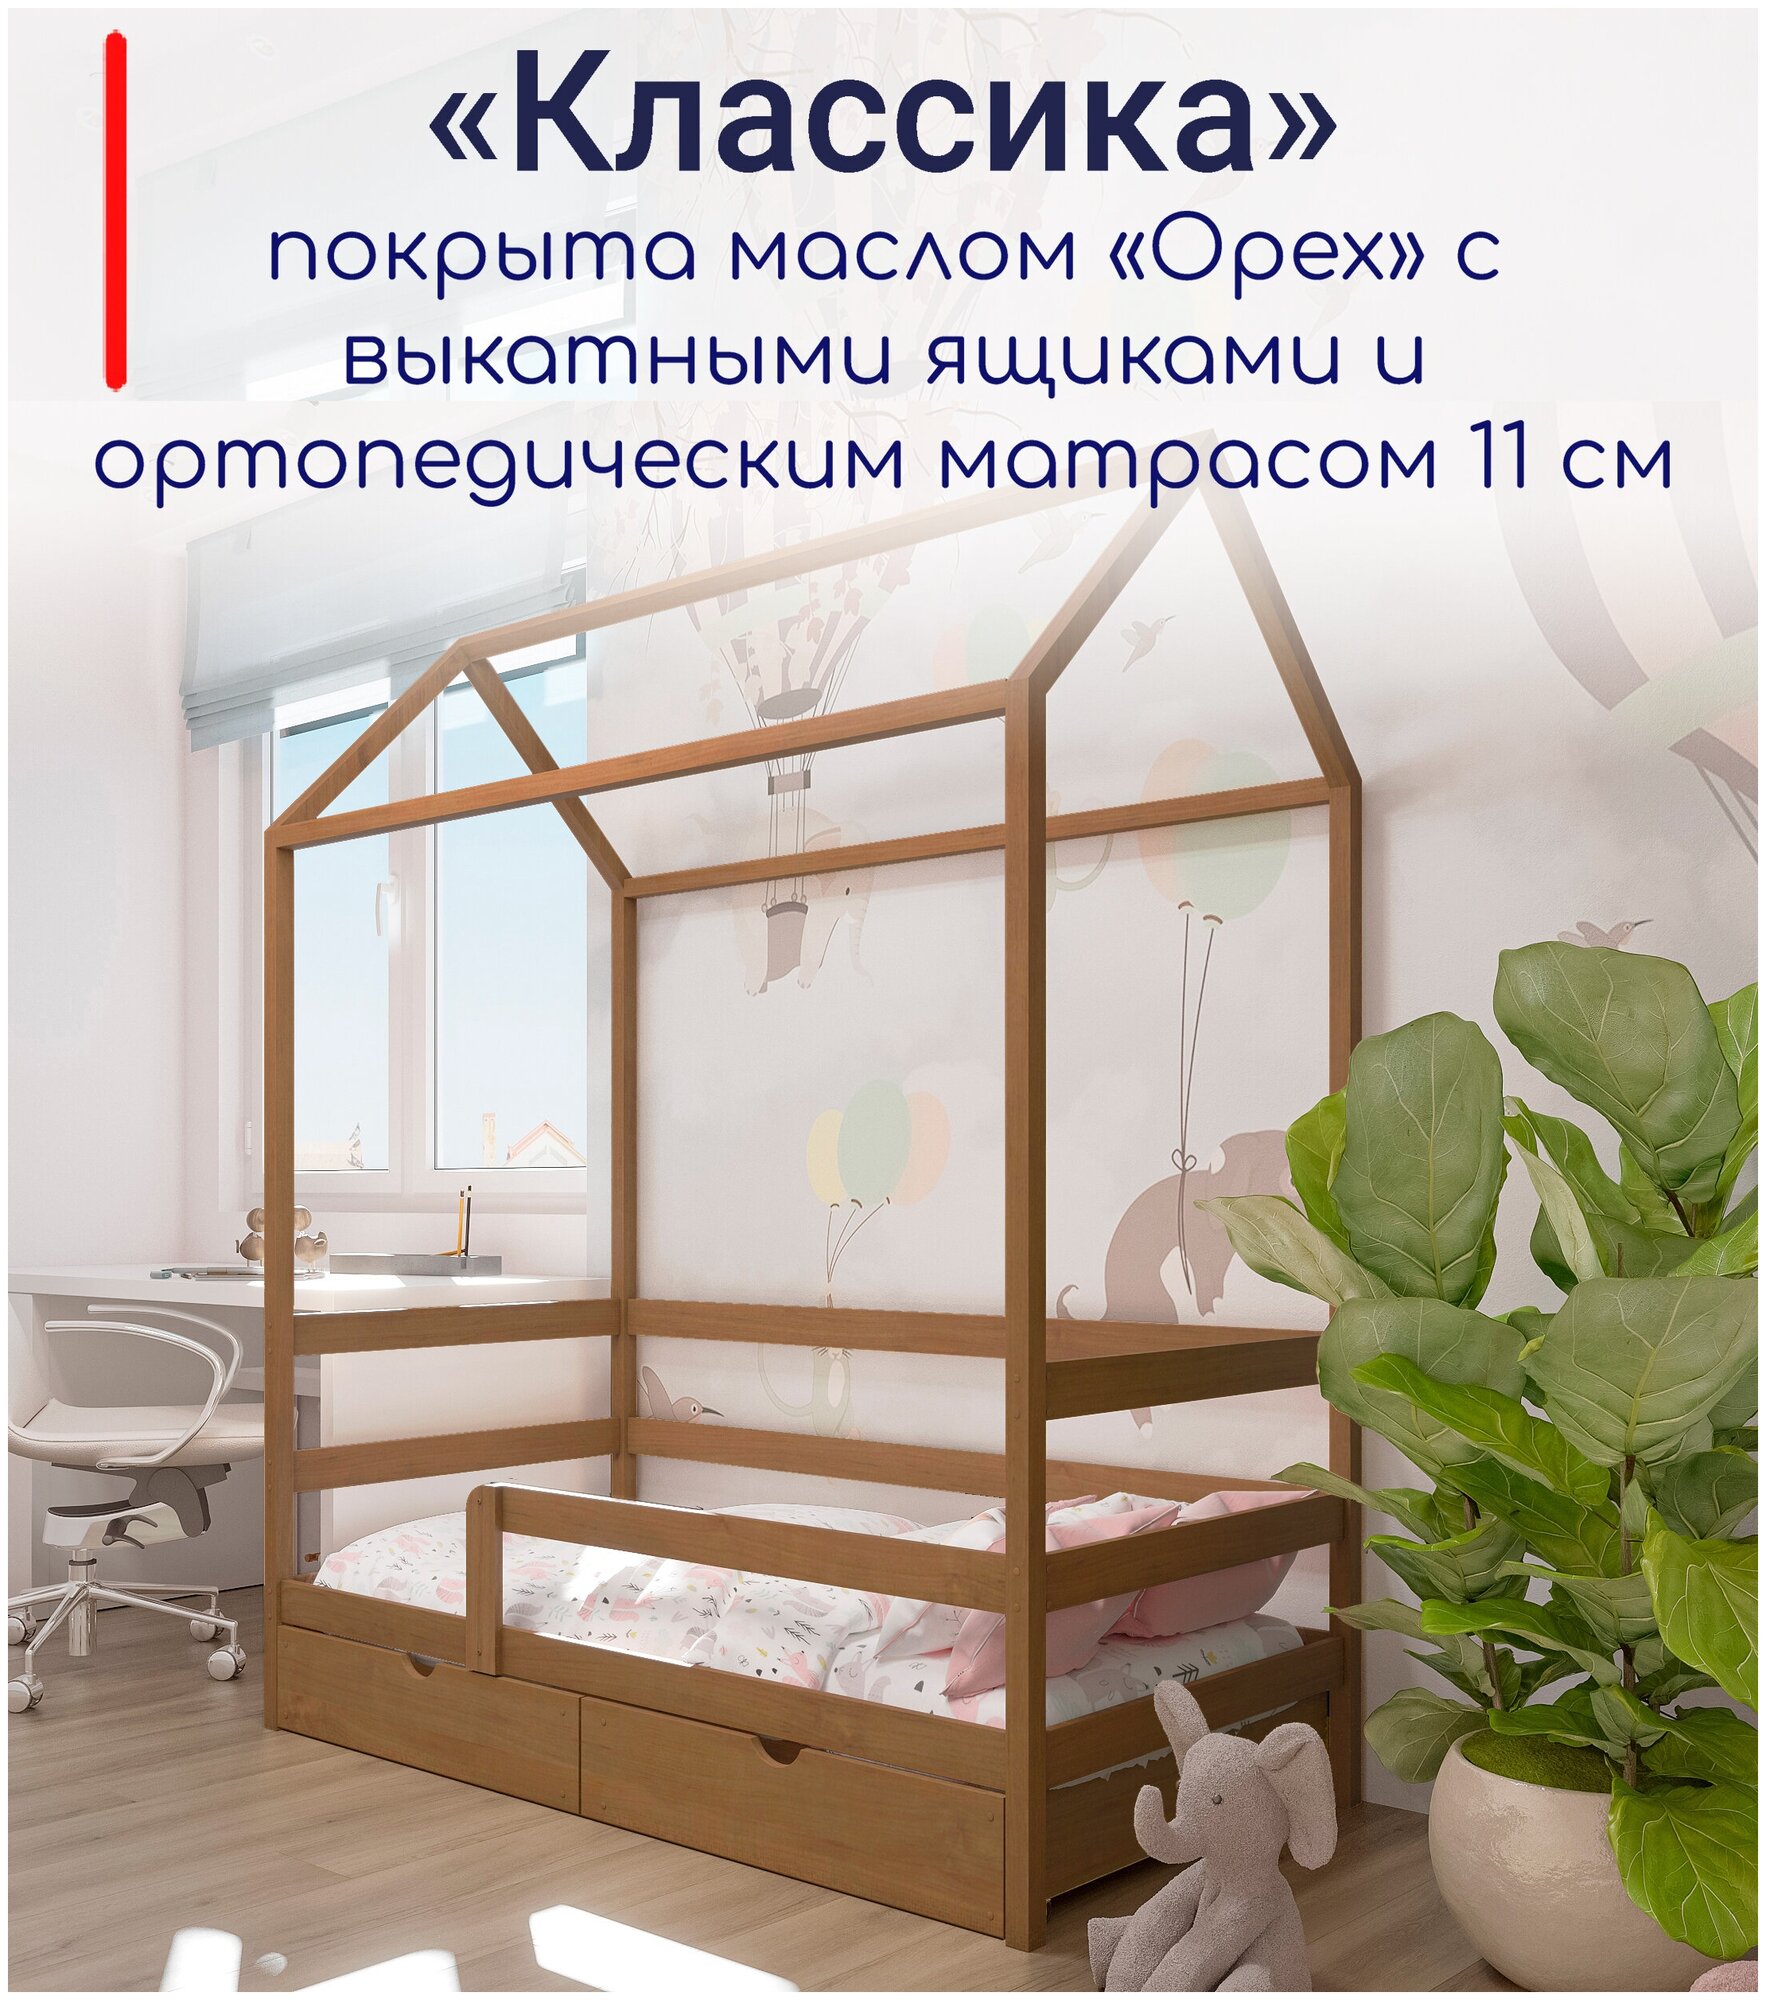 Кровать детская, подростковая "Классика", спальное место 180х90, в комплекте с выкатными ящиками и ортопедическим матрасом, масло "Орех", из массива